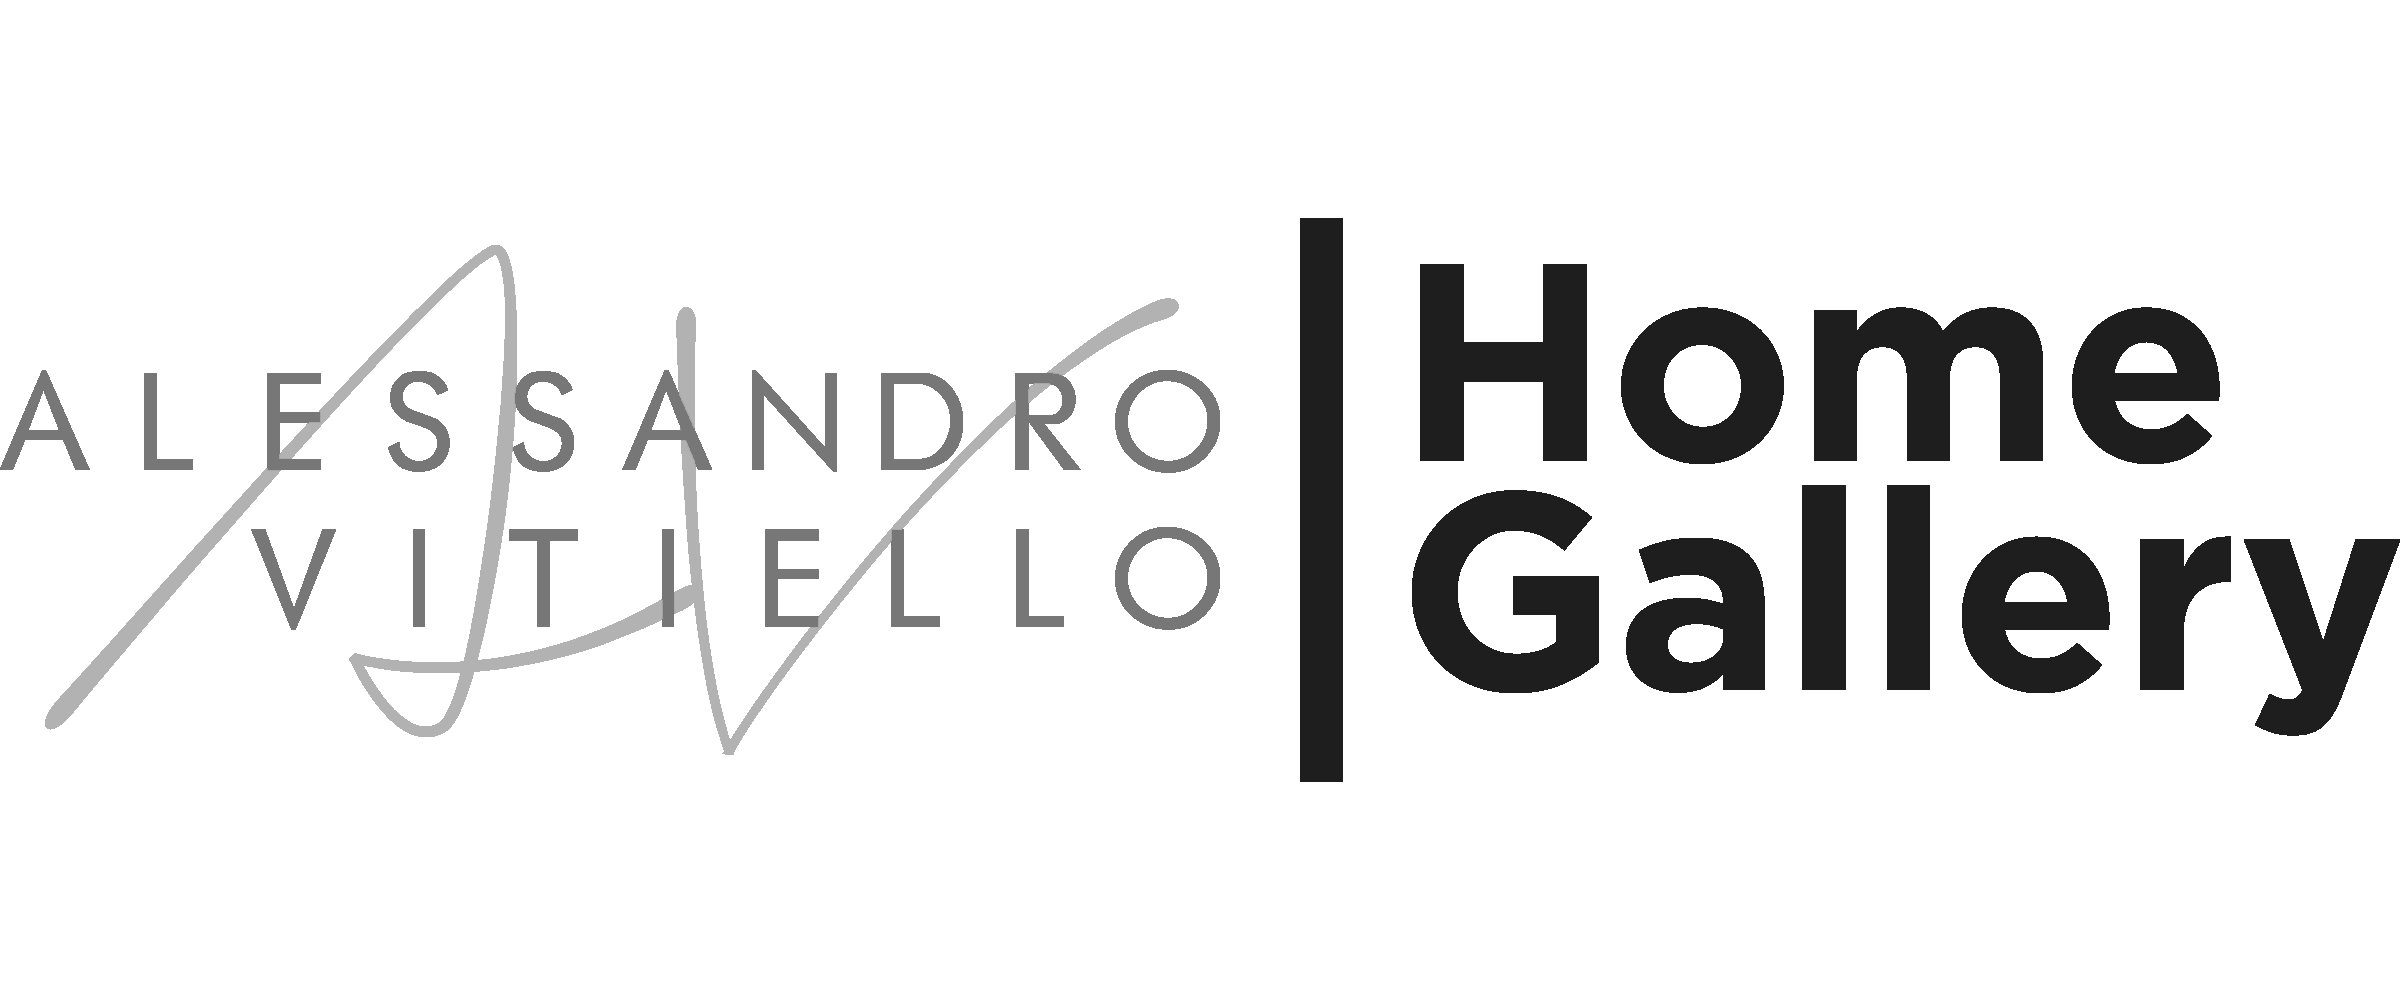 Alessandro Vitiello Home Gallery